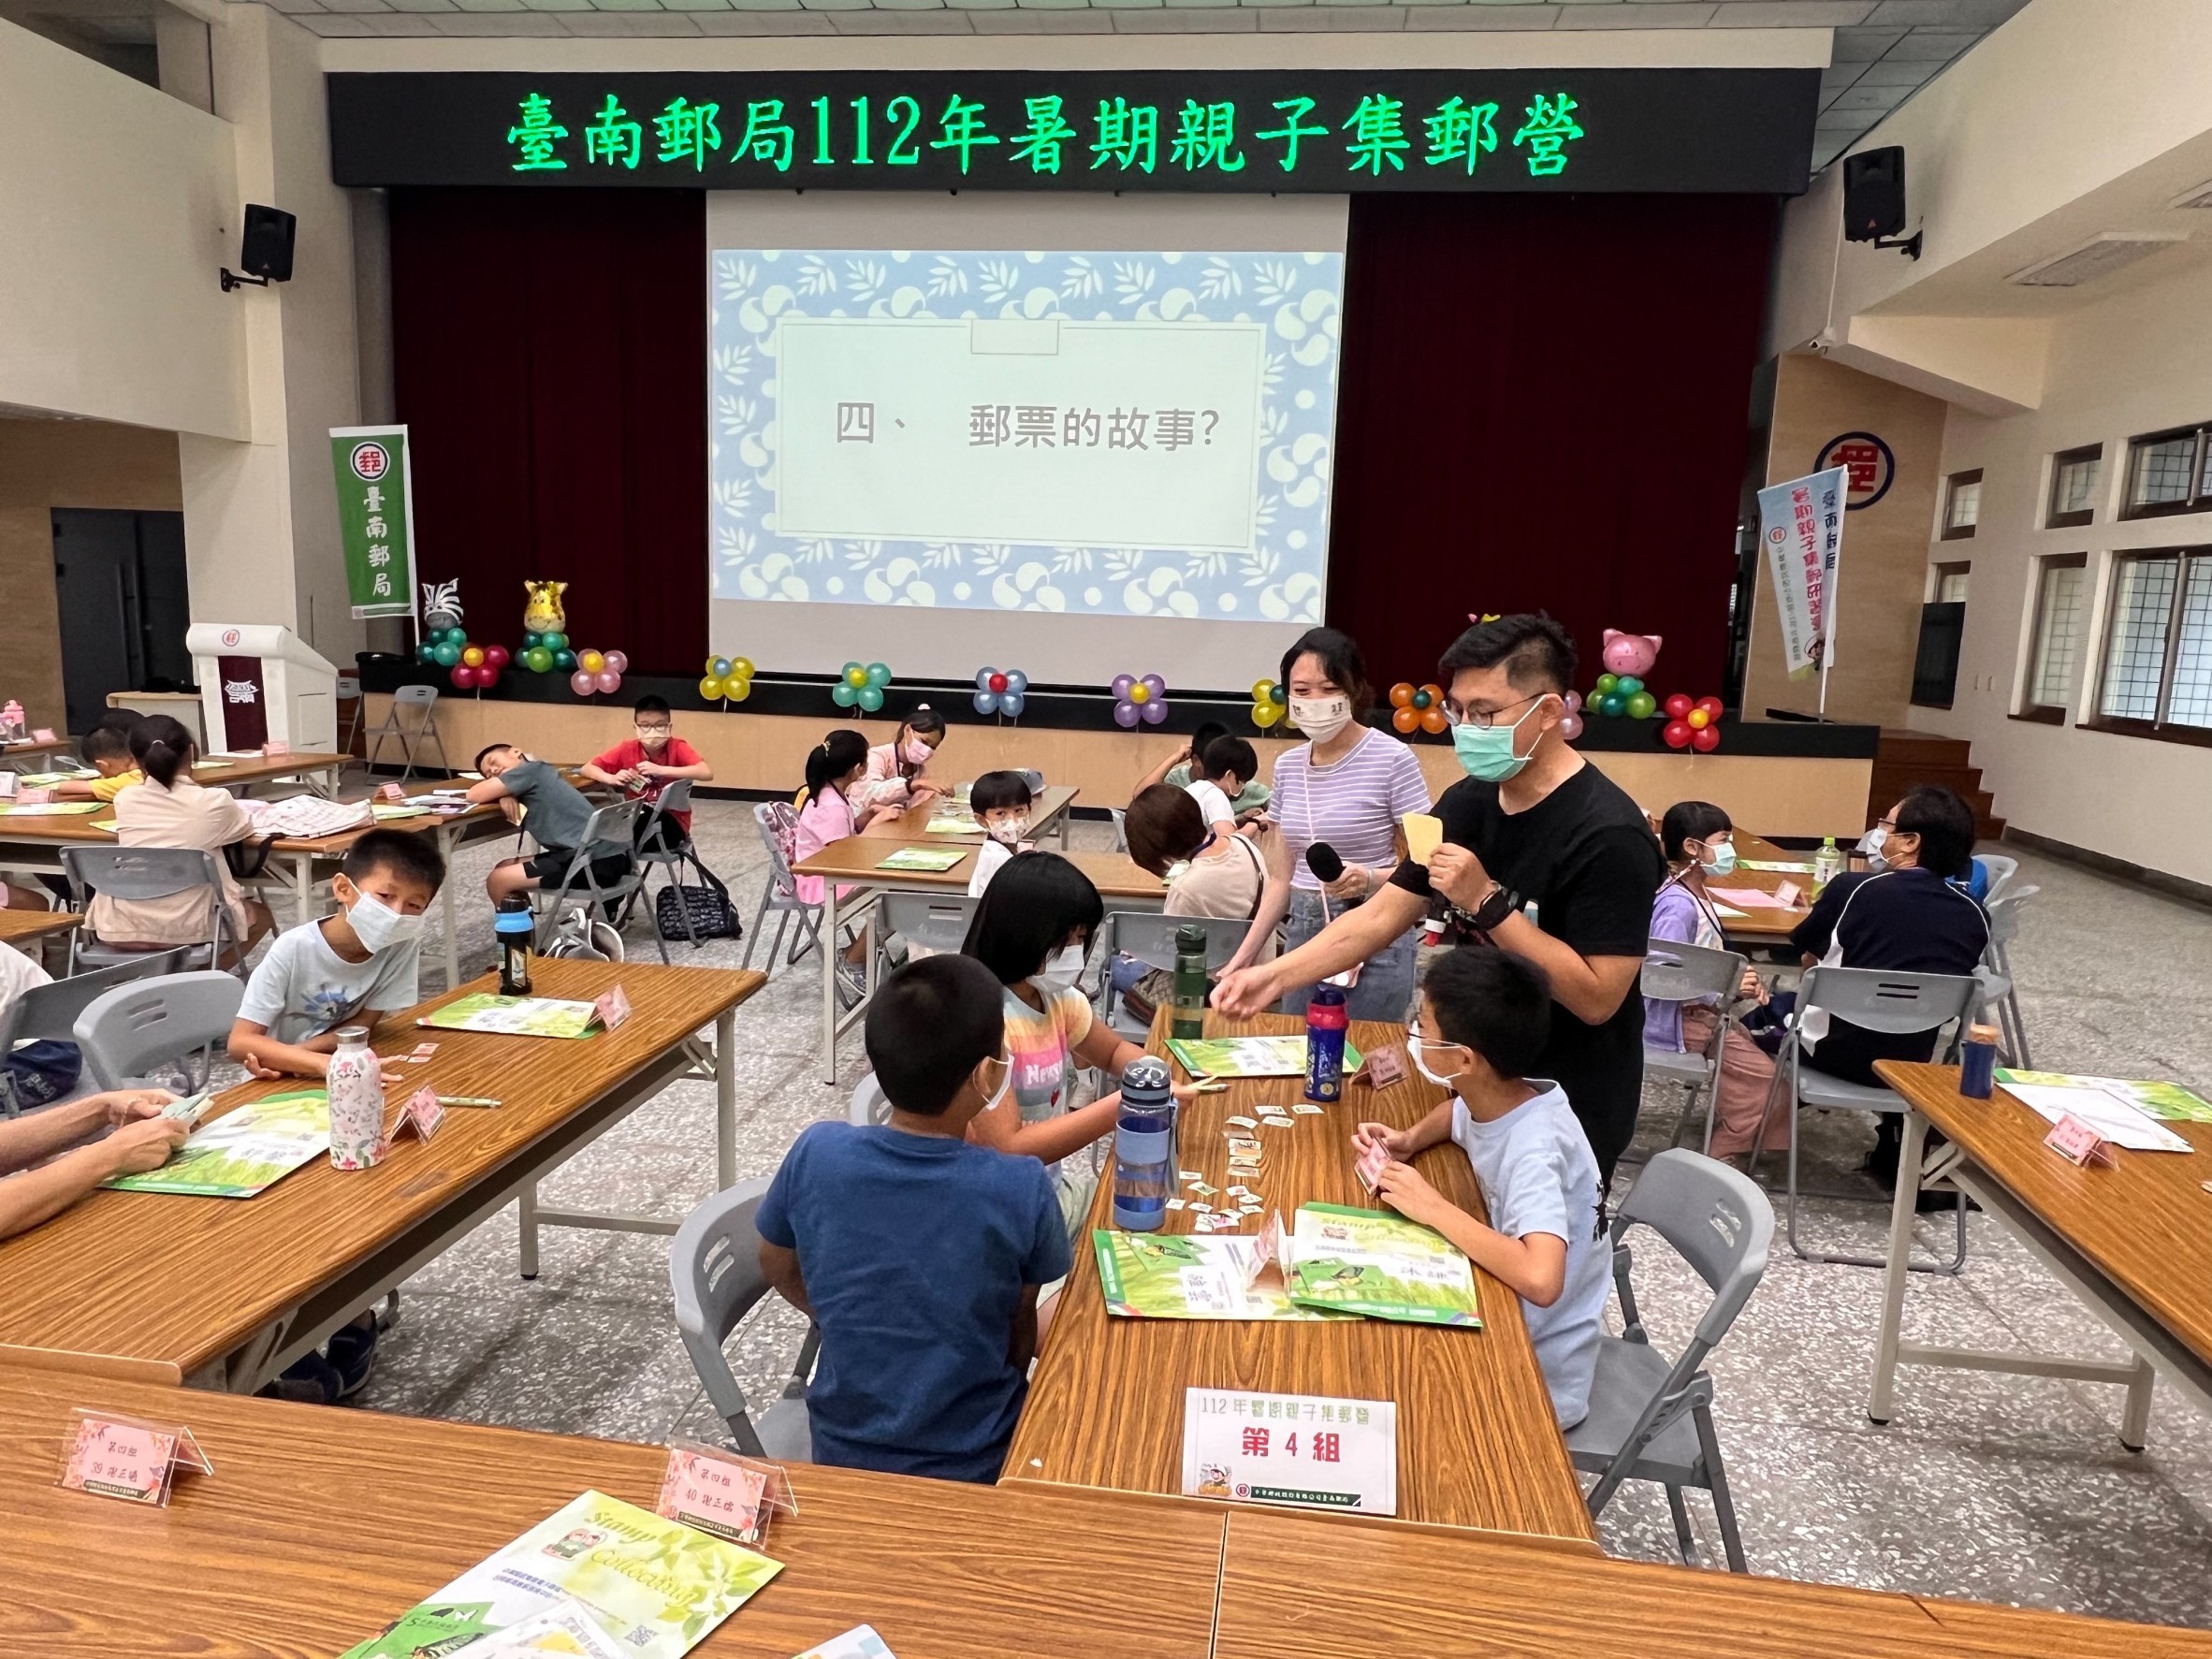 臺南郵局112年暑期親子集郵研習營活動